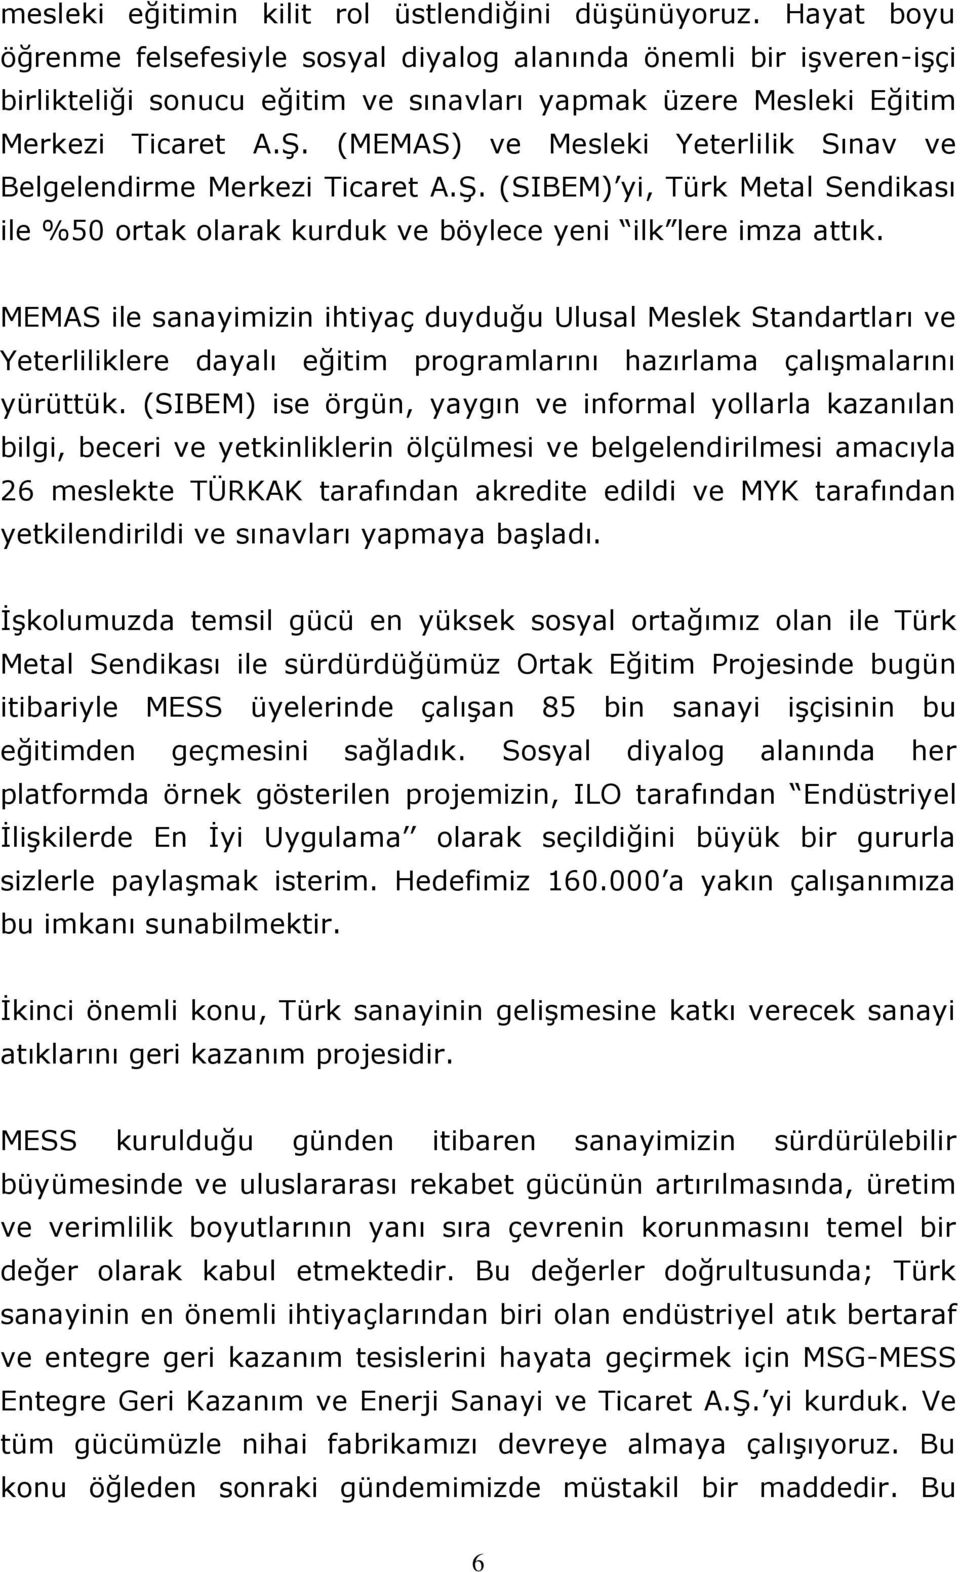 (MEMAS) ve Mesleki Yeterlilik Sınav ve Belgelendirme Merkezi Ticaret A.Ş. (SIBEM) yi, Türk Metal Sendikası ile %50 ortak olarak kurduk ve böylece yeni ilk lere imza attık.